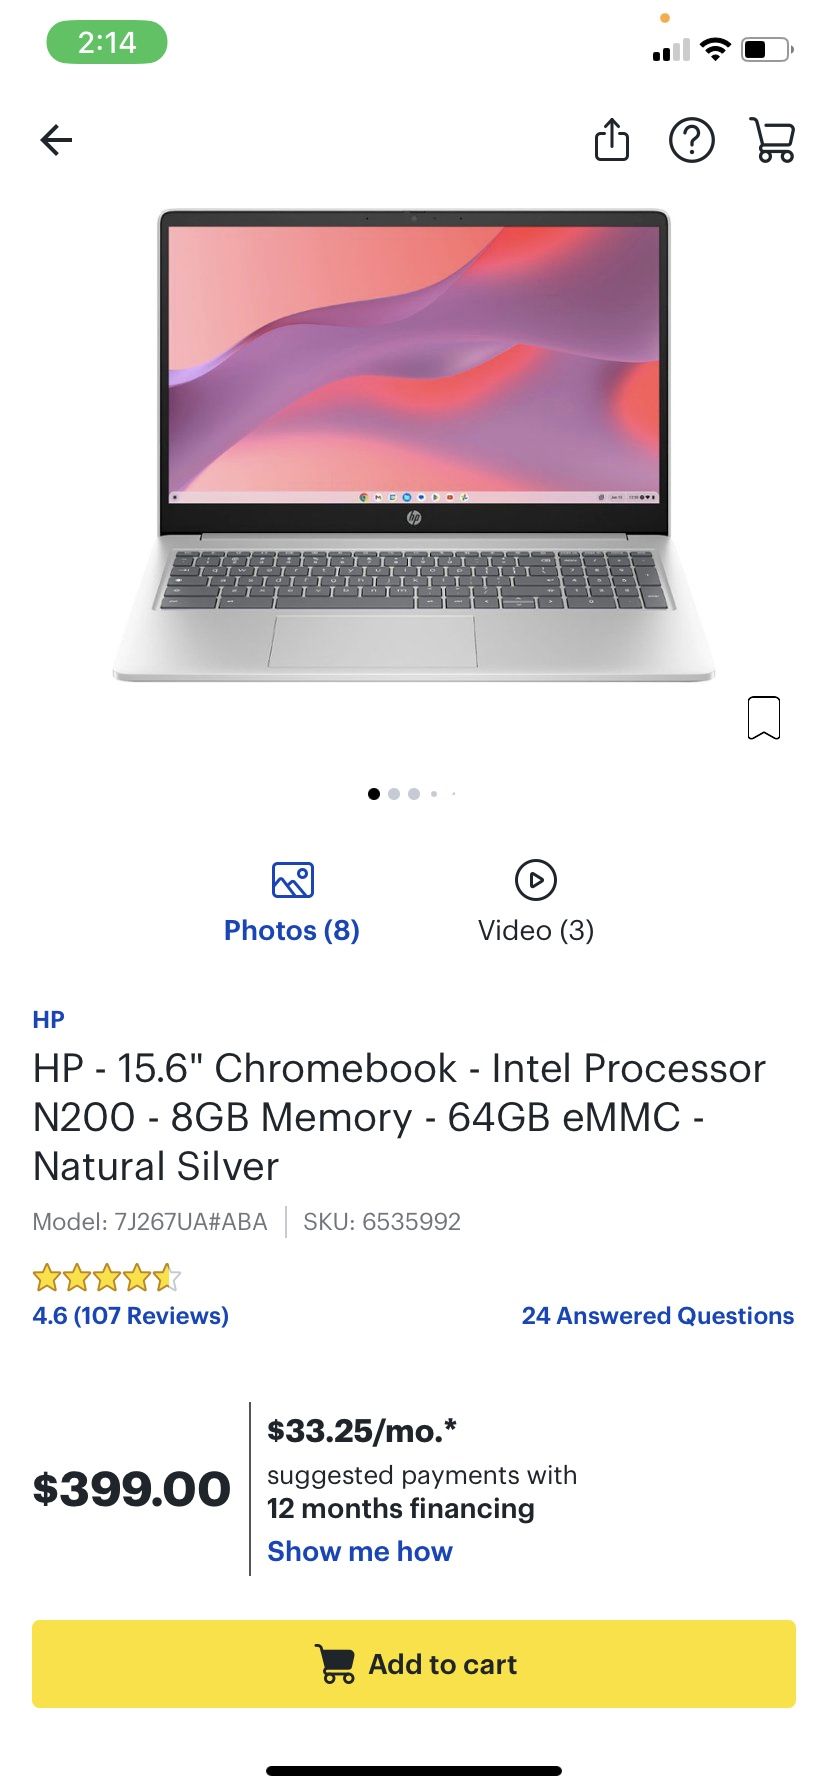 Brand New Hp Chromebook Unopened Box 